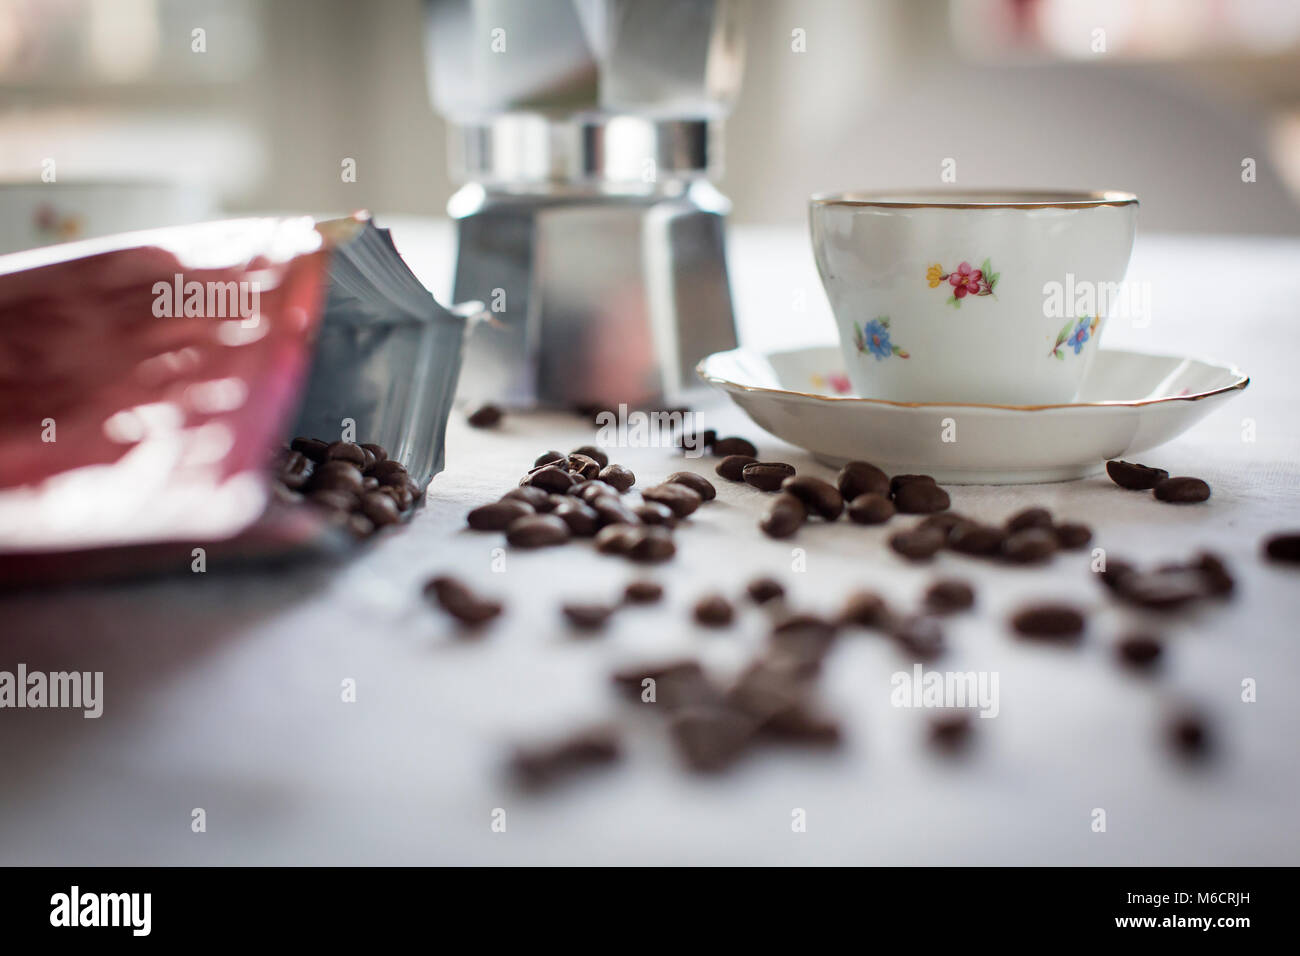 Espresso italiano clásico con taza de café y granos de café sobre una mesa. Foto de stock